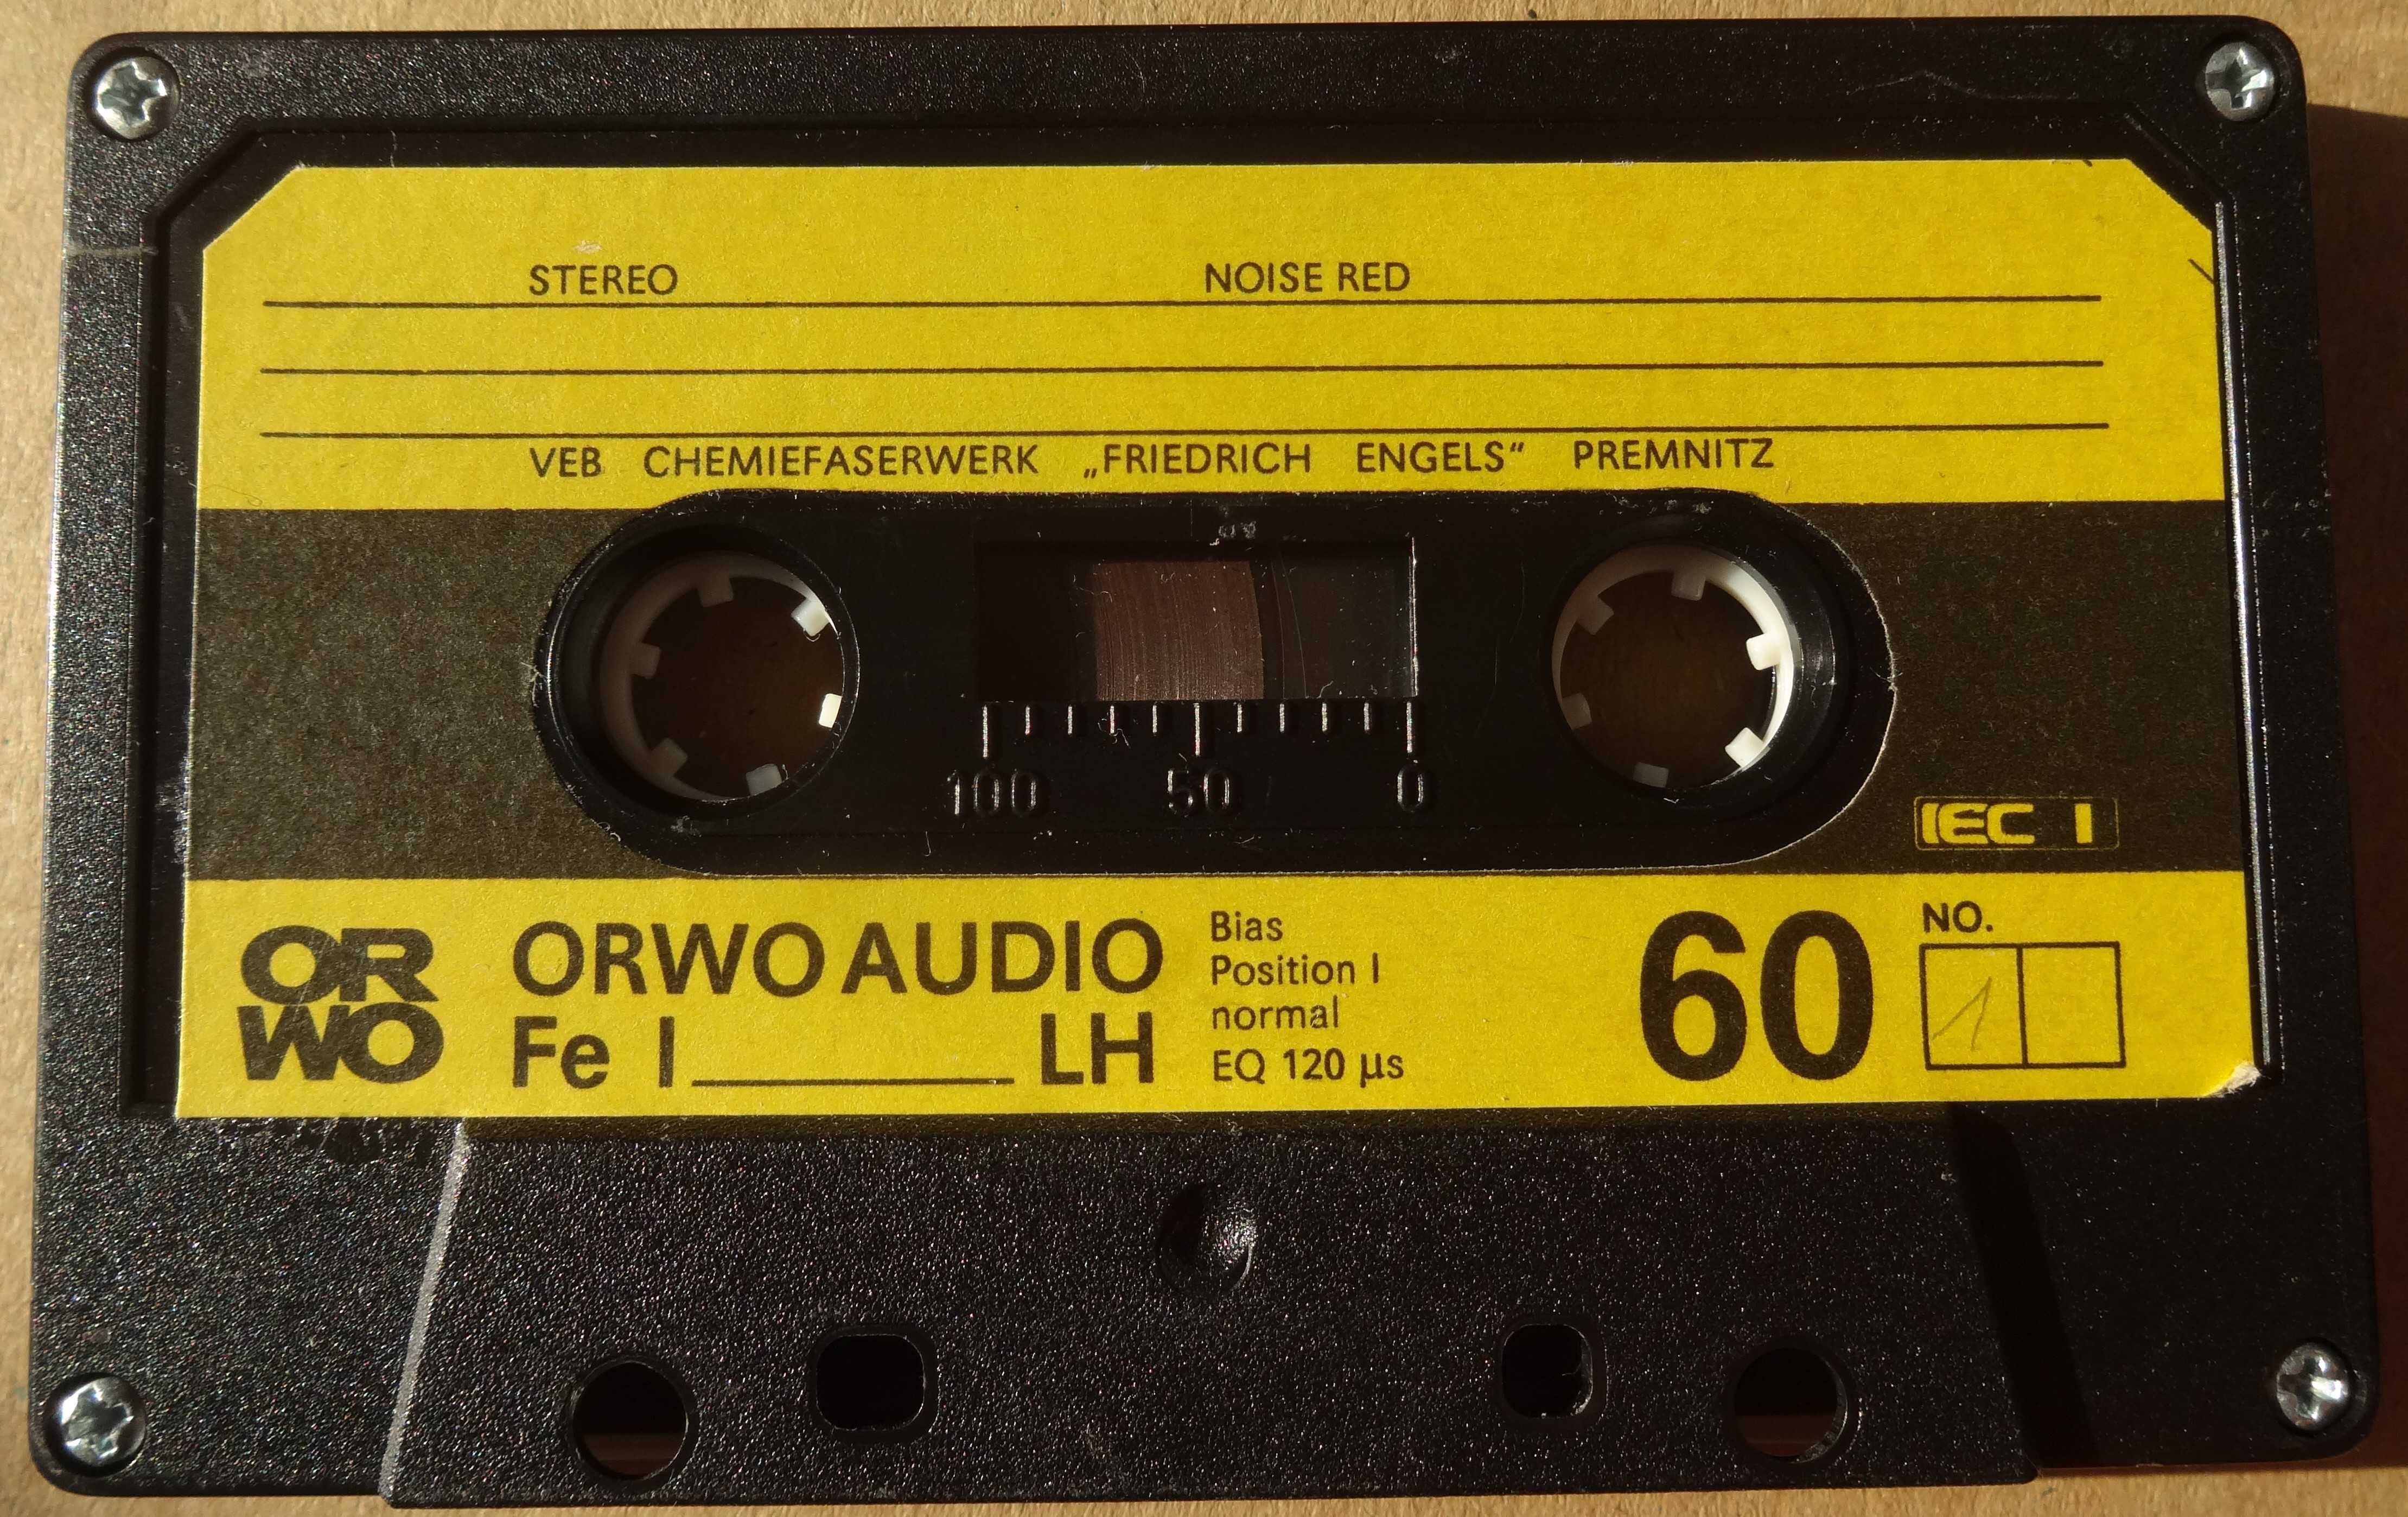 ORWO AUDIO Fe I LH 60 - kaseta żelazowa z lat 80., wkładka bez wpisów